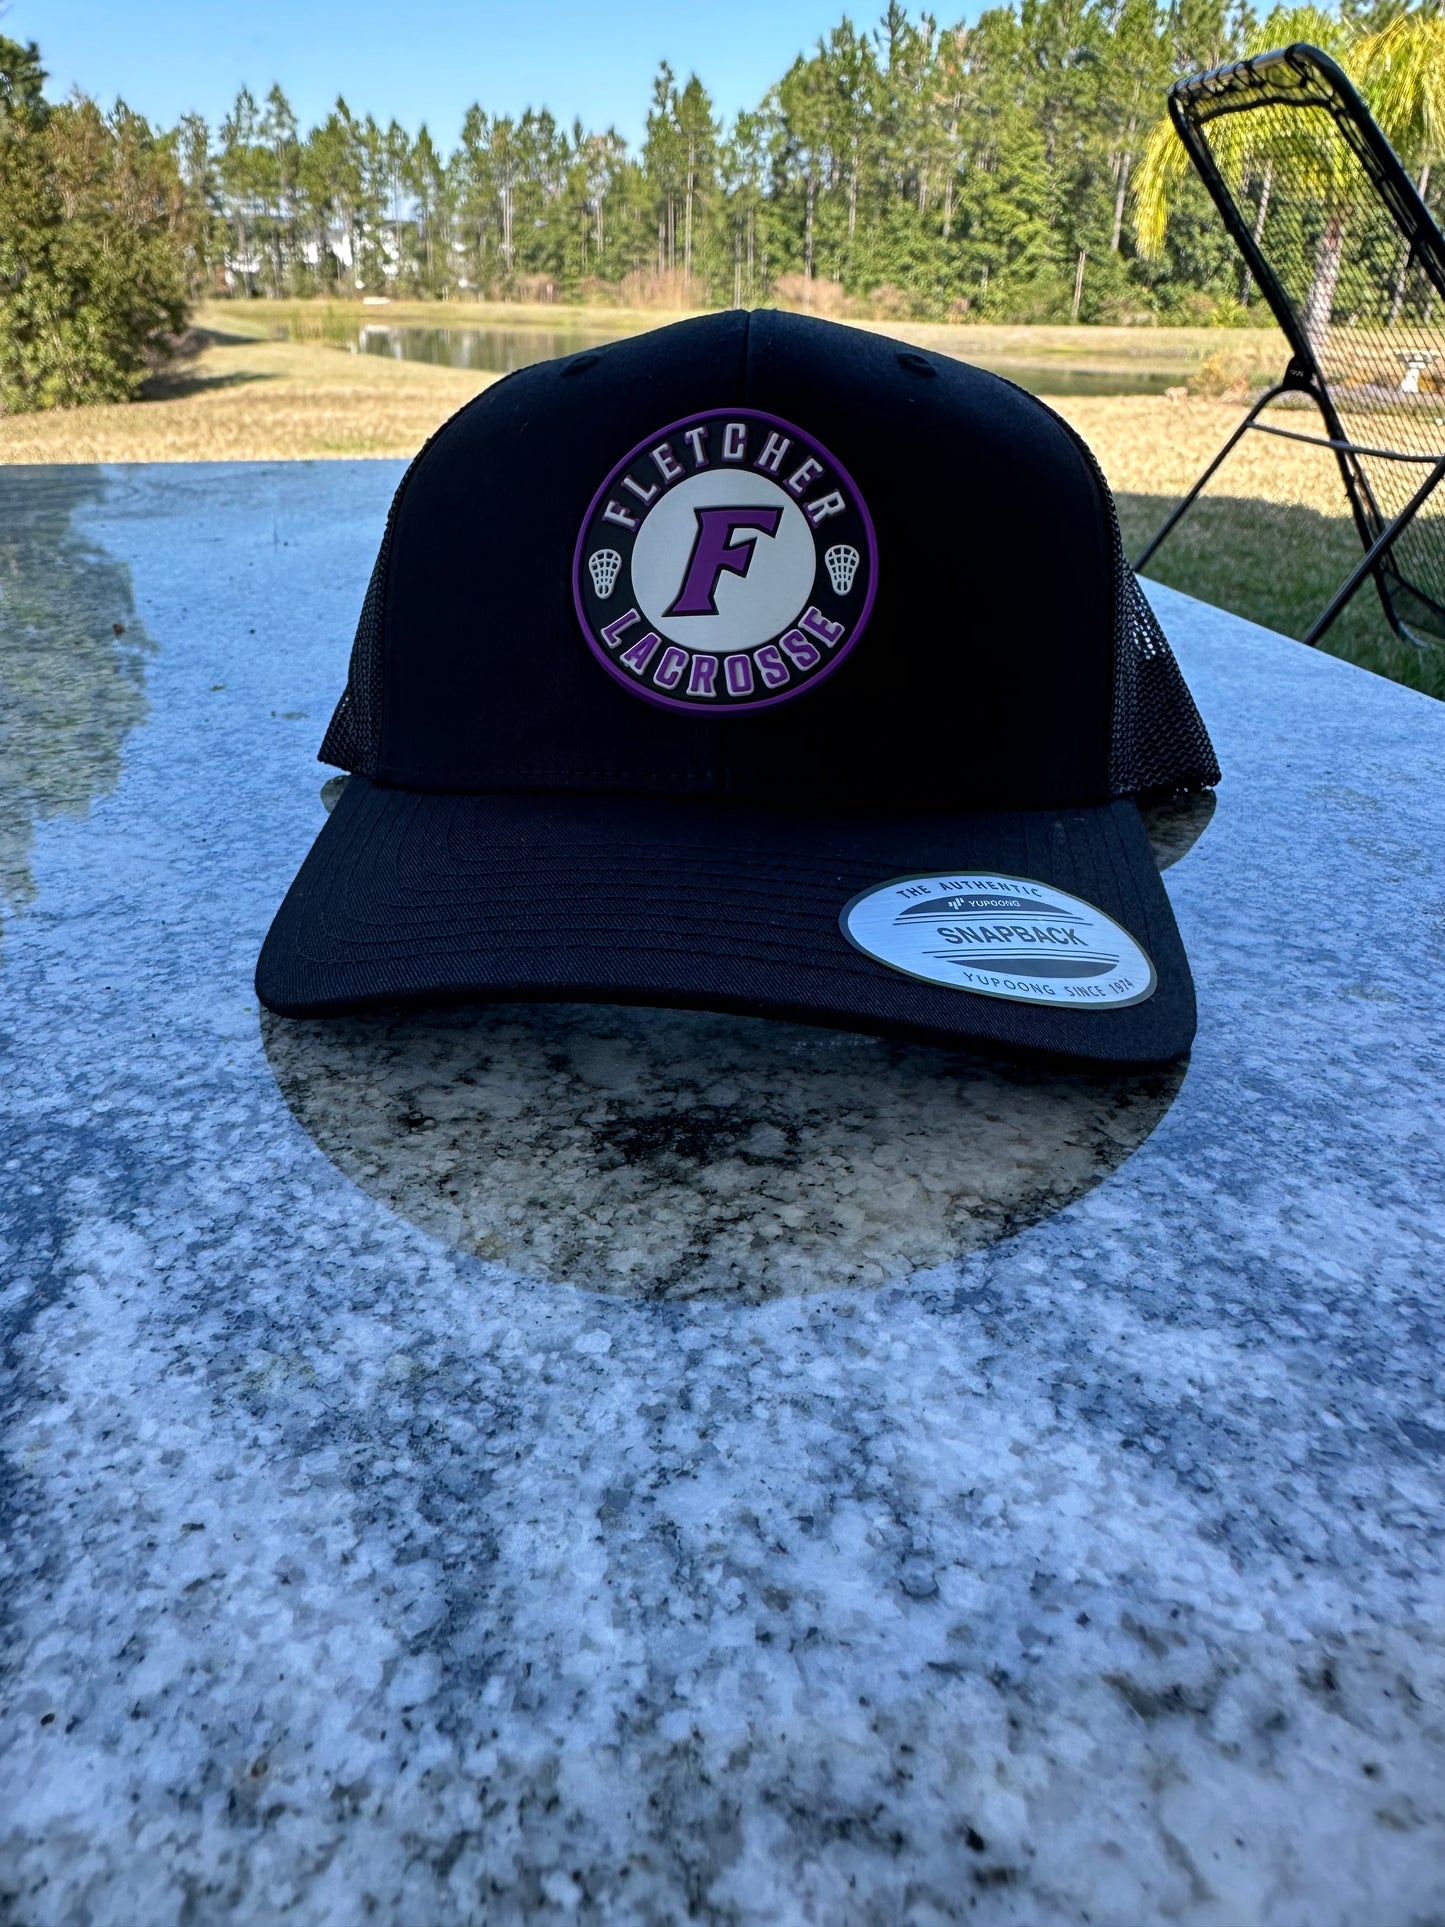 Fletcher Lacrosse Rubber Patch Trucker Hat